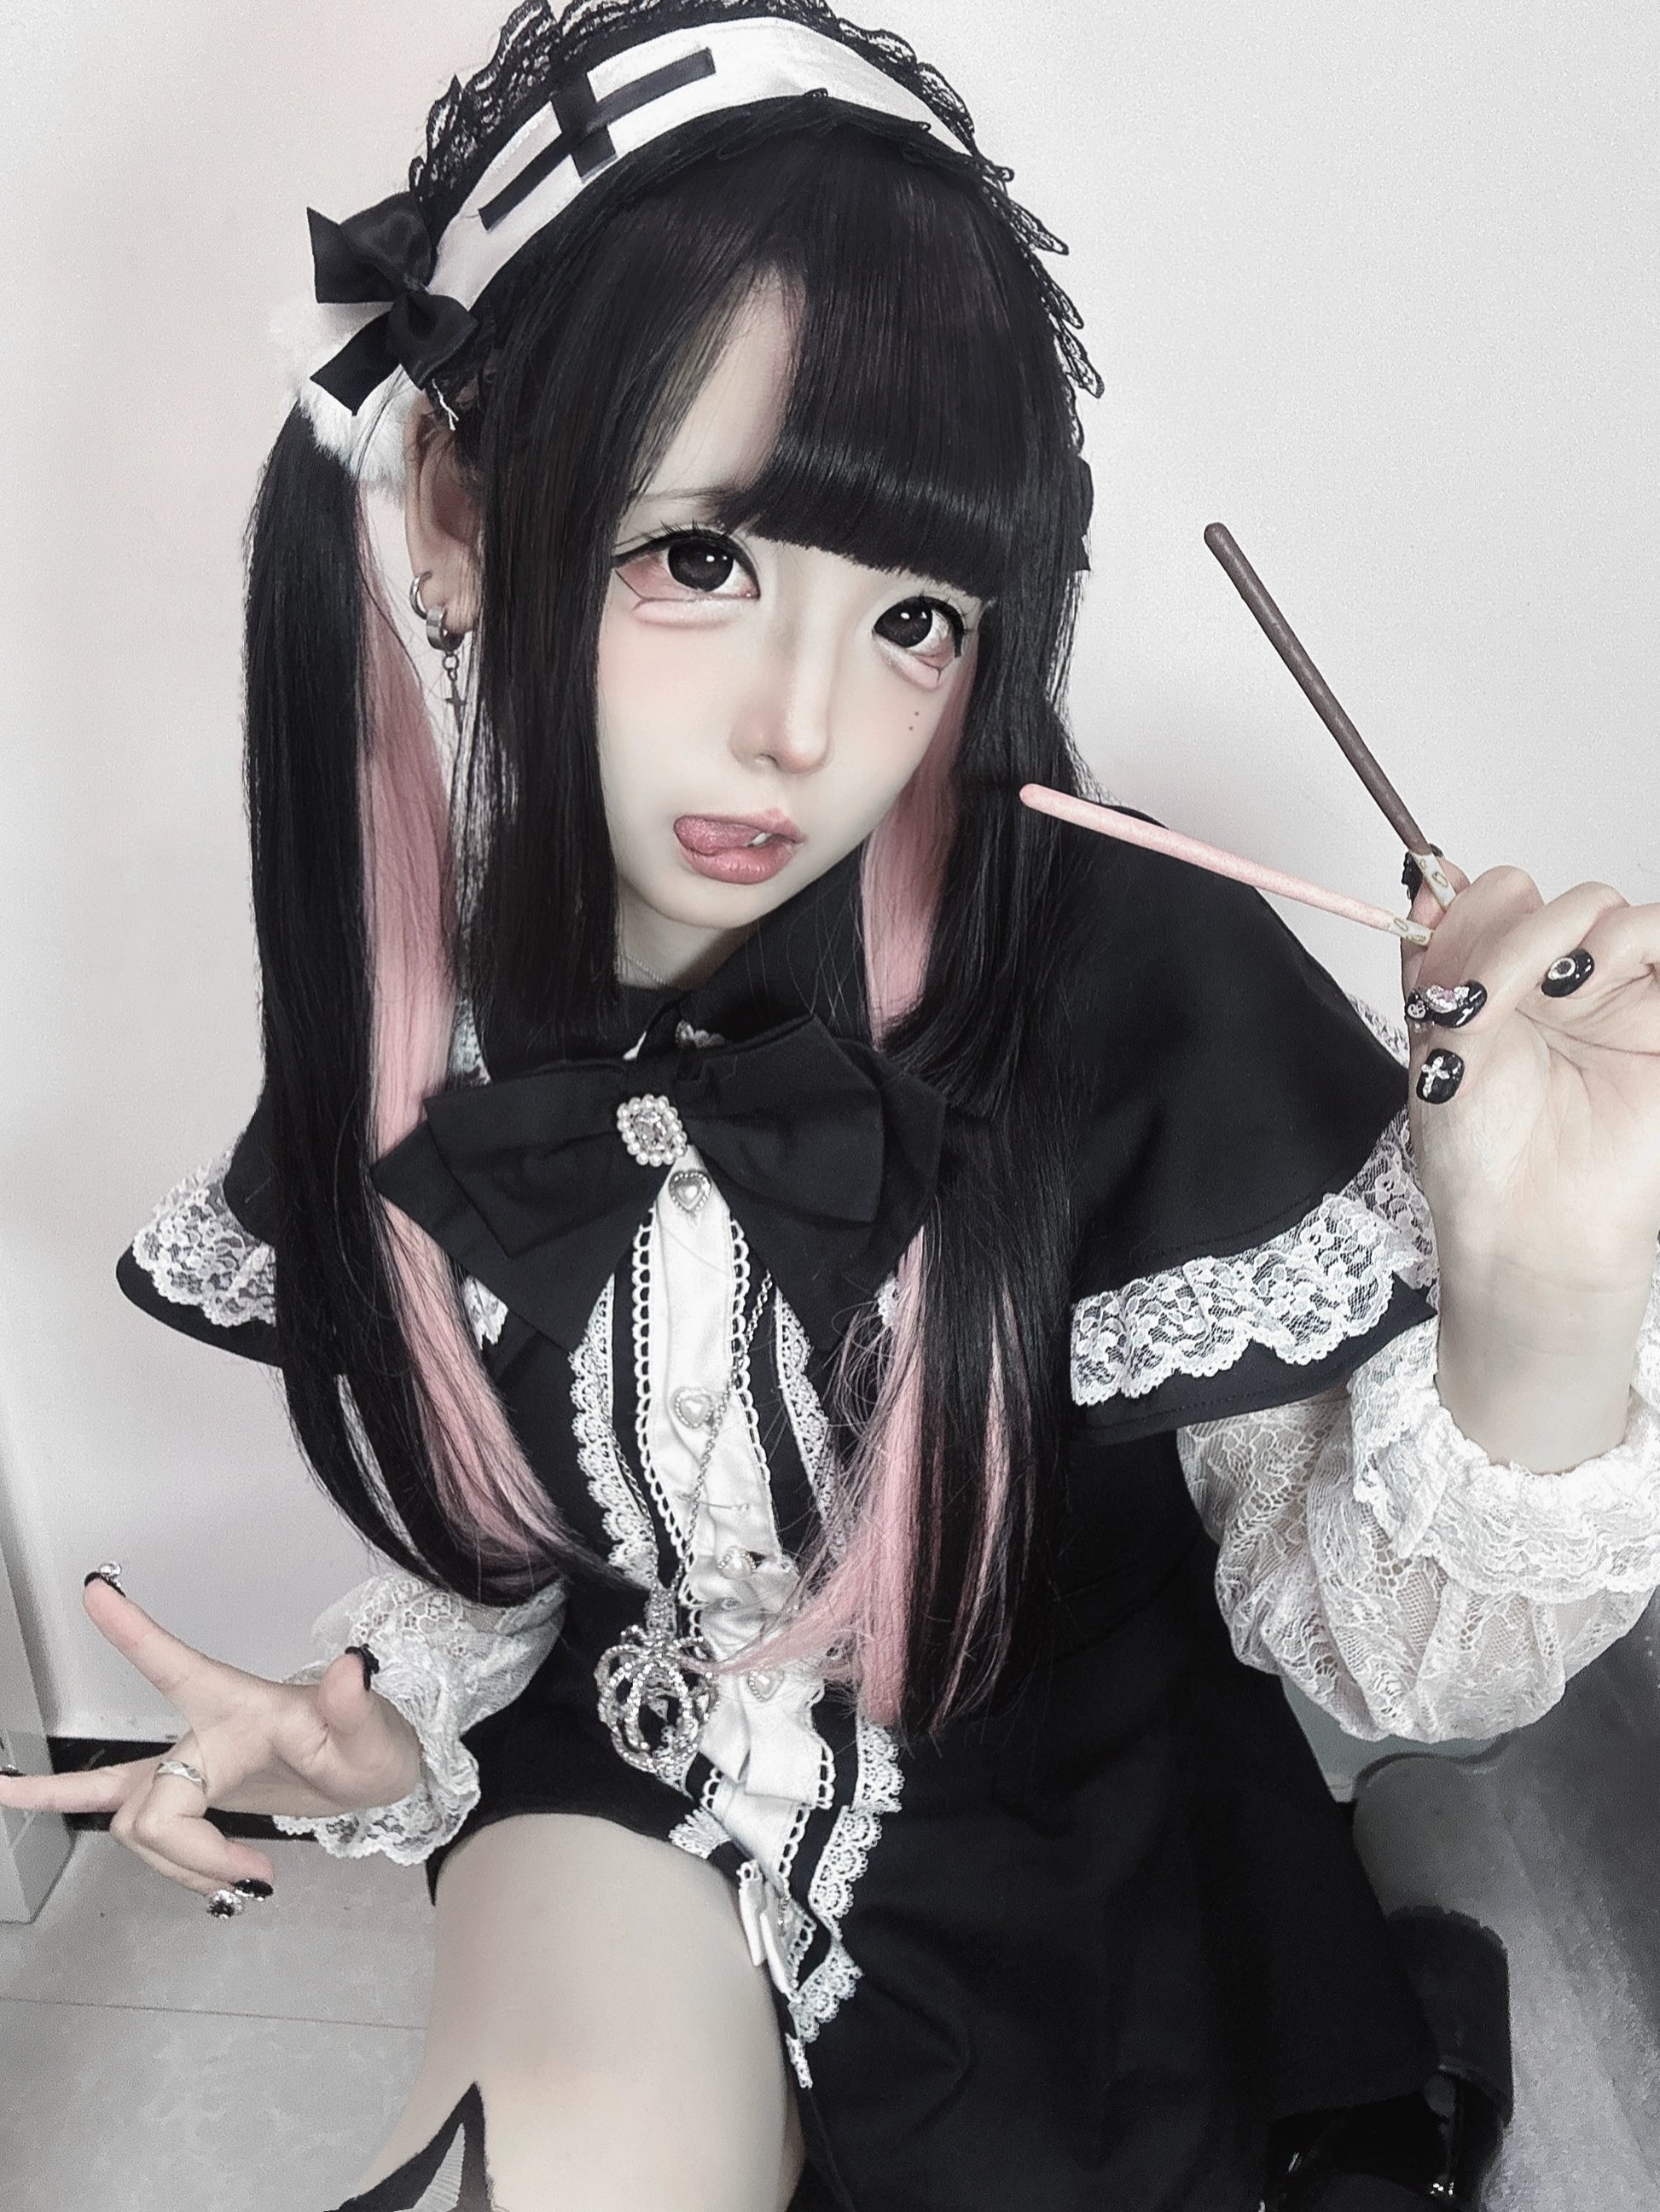 Jirai Kei Dress Set Lace Sleeve Black Cape Outfit Sets 37456:561396